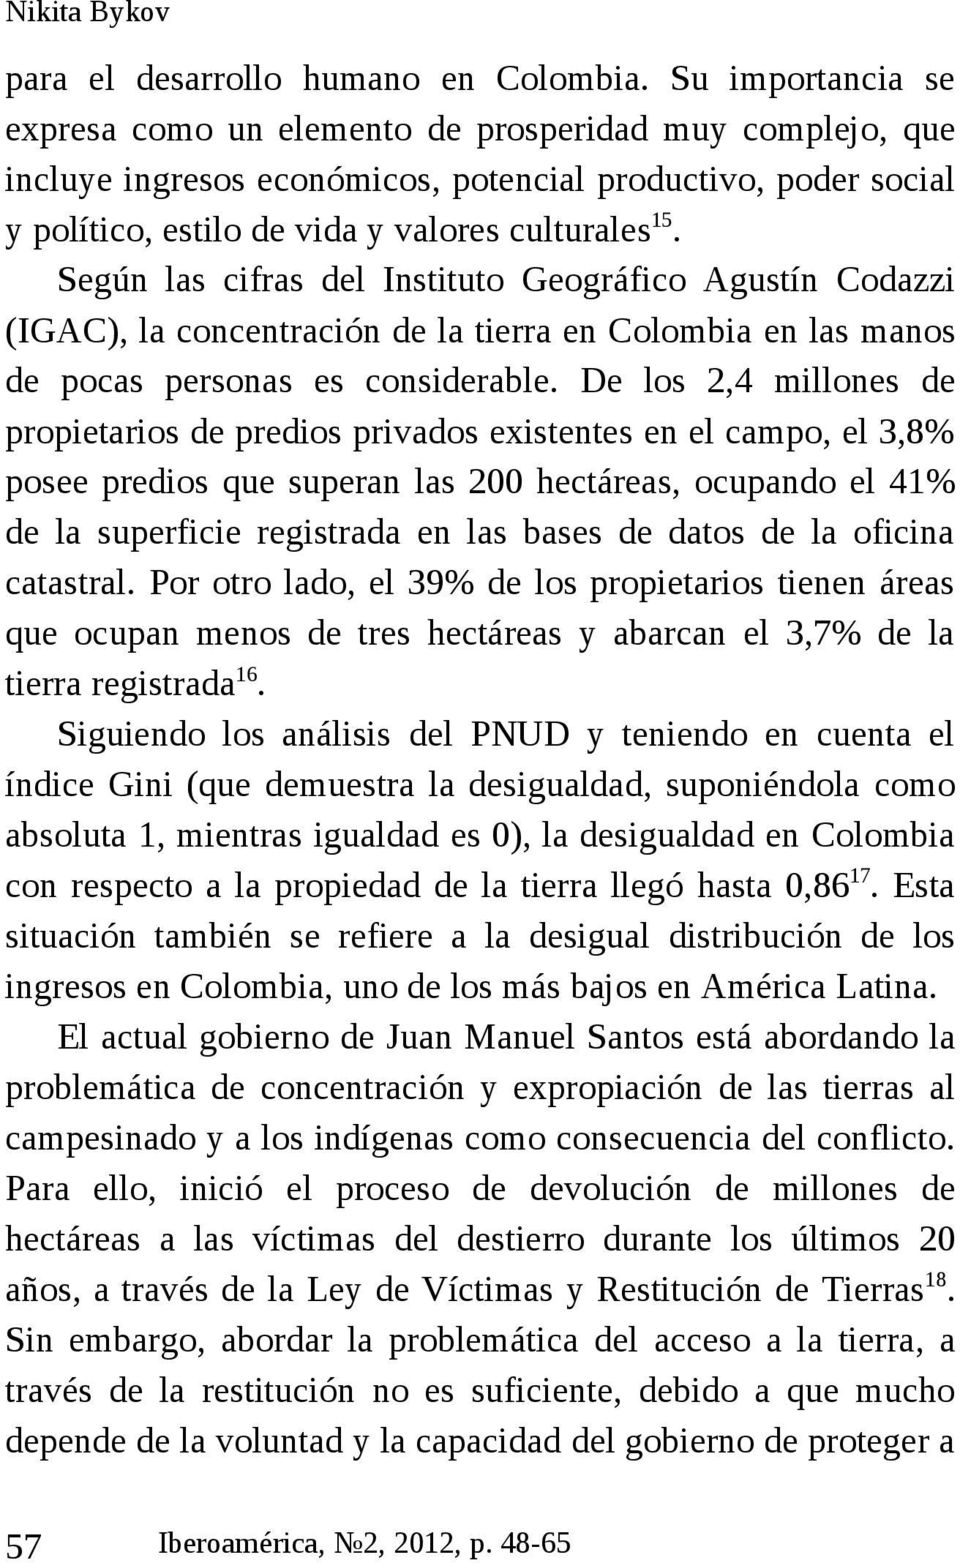 Según las cifras del Instituto Geográfico Agustín Codazzi (IGAC), la concentración de la tierra en Colombia en las manos de pocas personas es considerable.